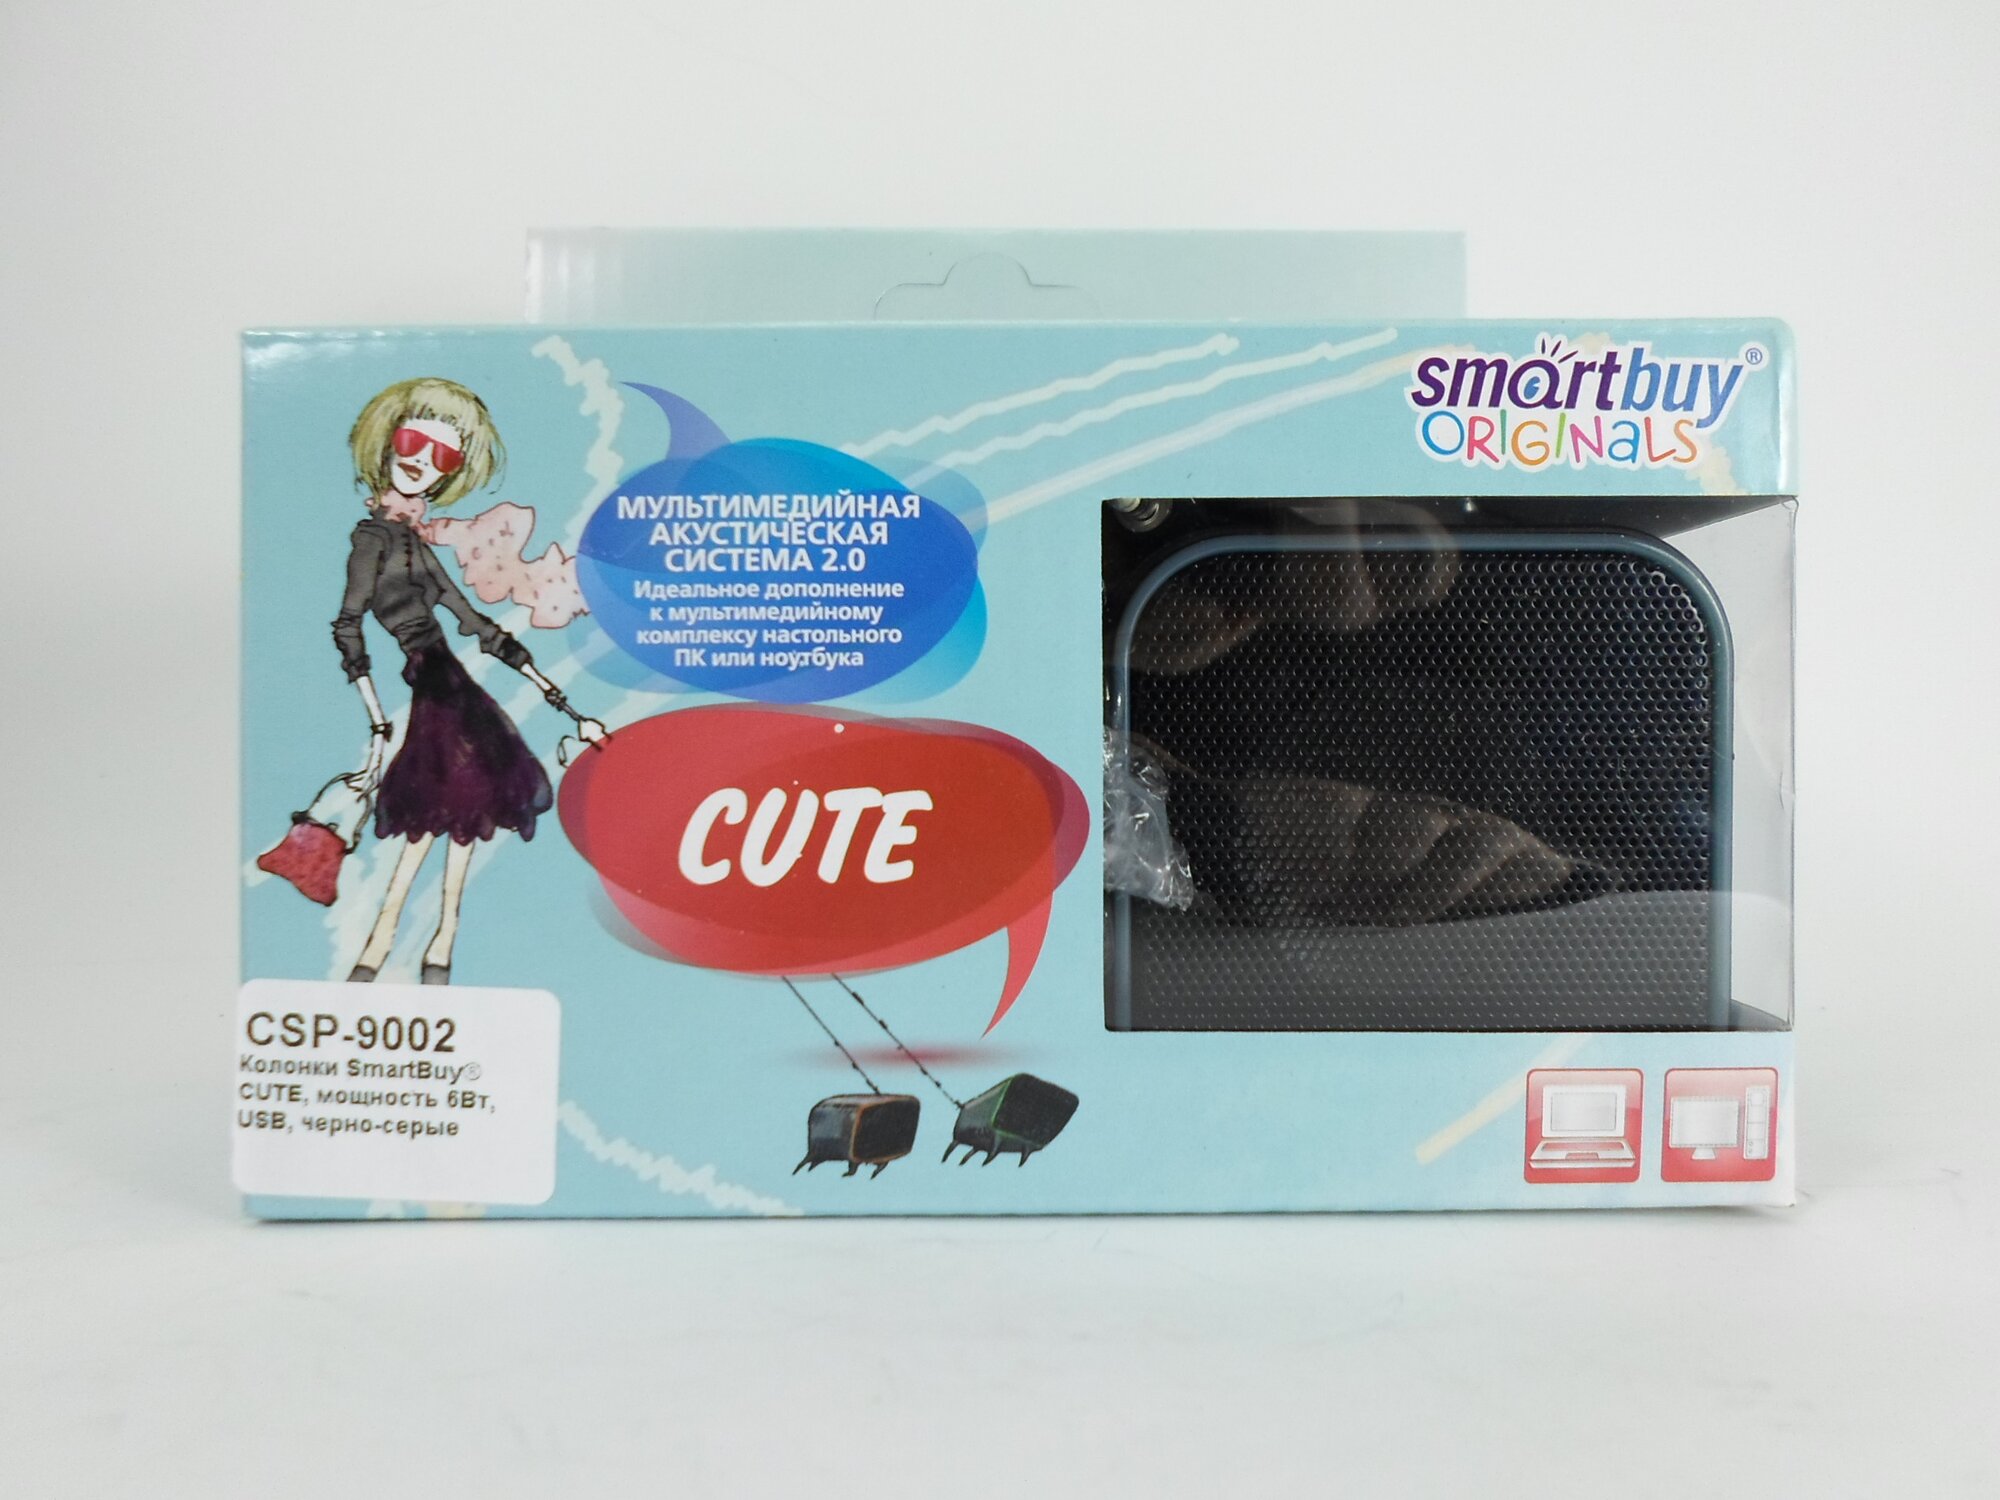 Колонки SmartBuy CUTE, мощность 6Вт, USB, черно-серые